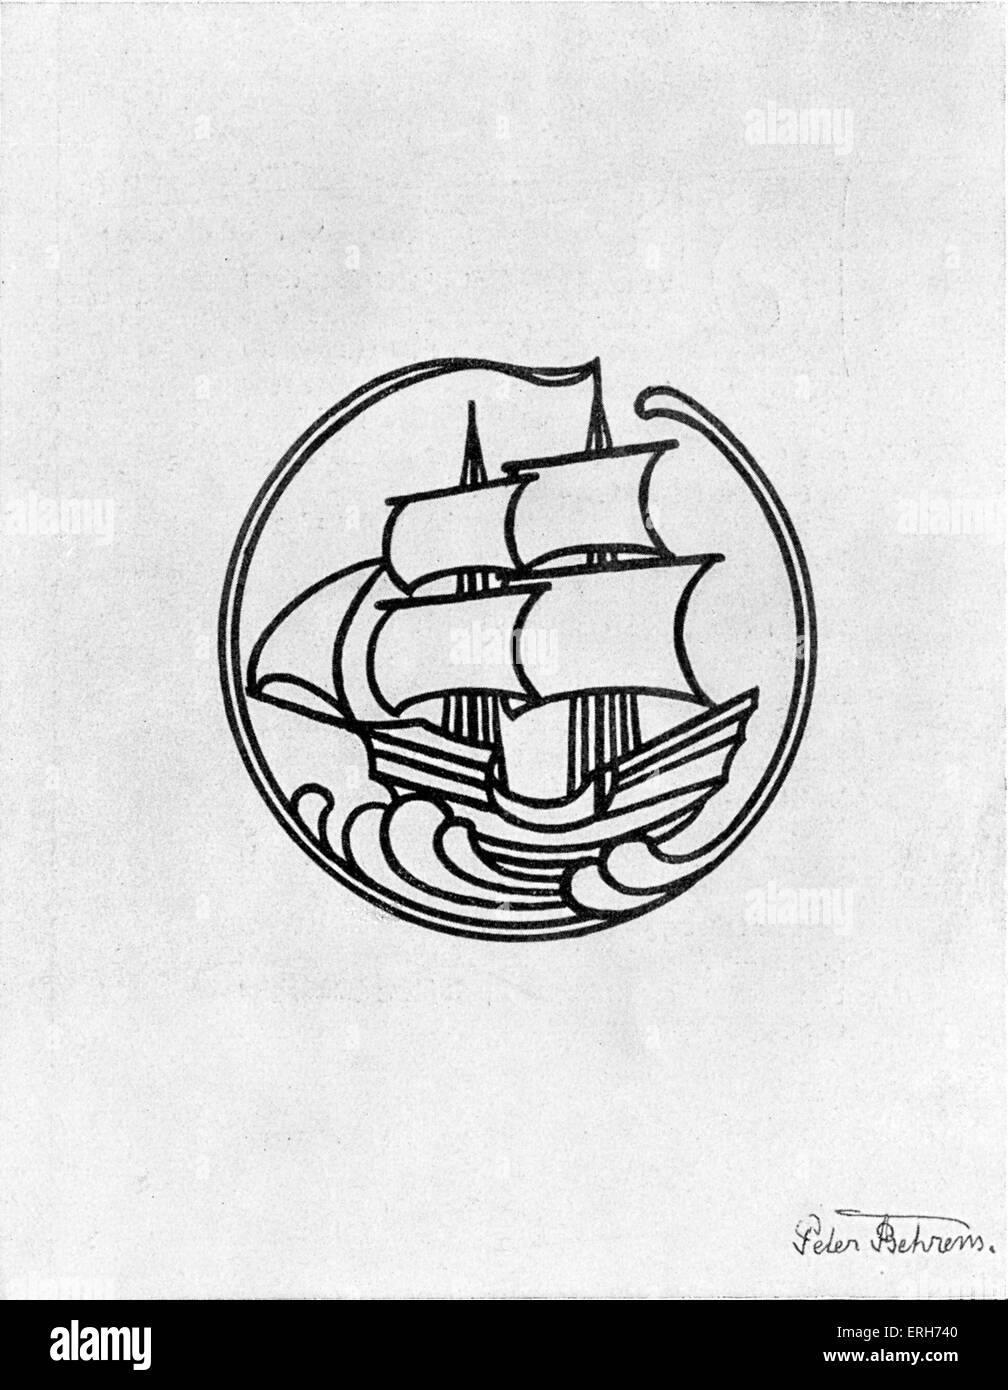 Emblem / Logo der Insel sterben in 1899 l (The Island) von Peter Behrens (14. April 1868 – 27. Februar 1940) - deutsche Literatur Stockfoto